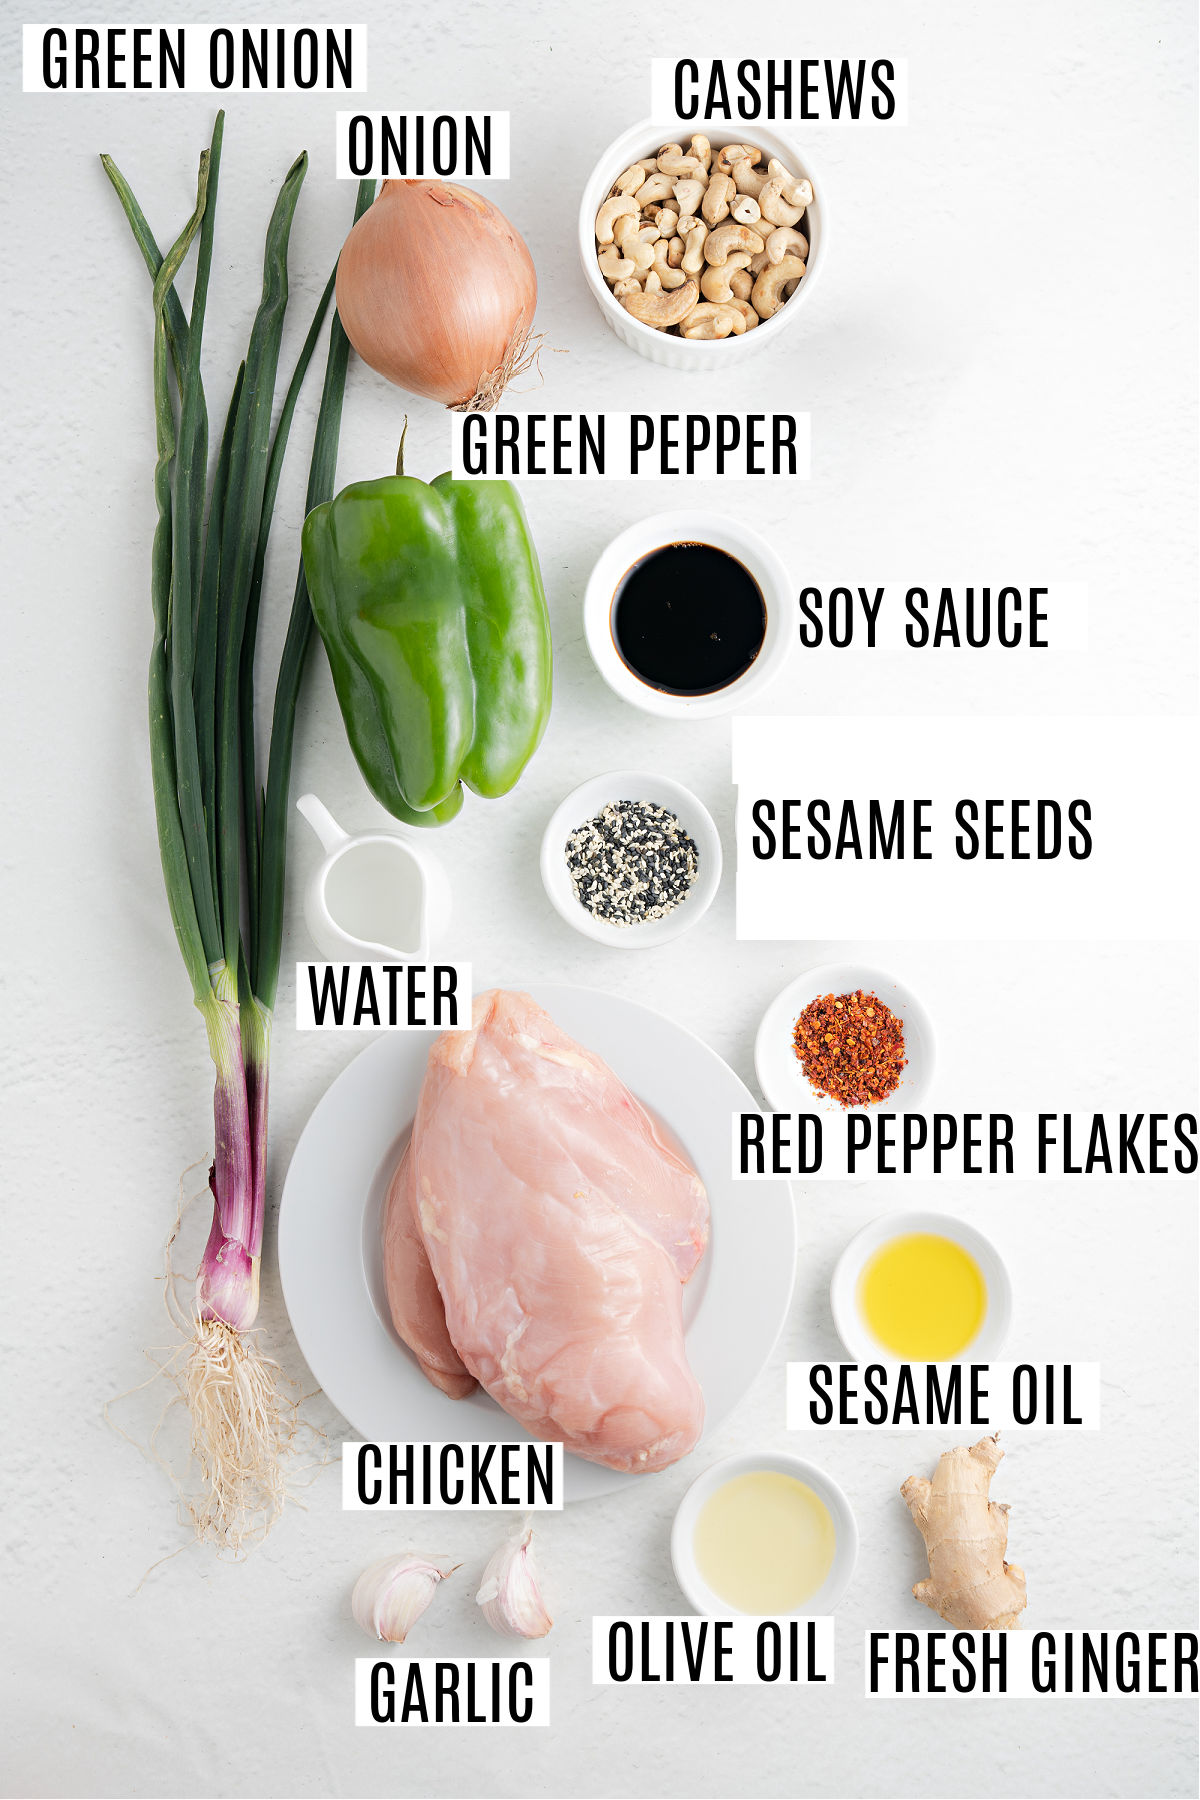 Ingredients needed to make cashew chicken.